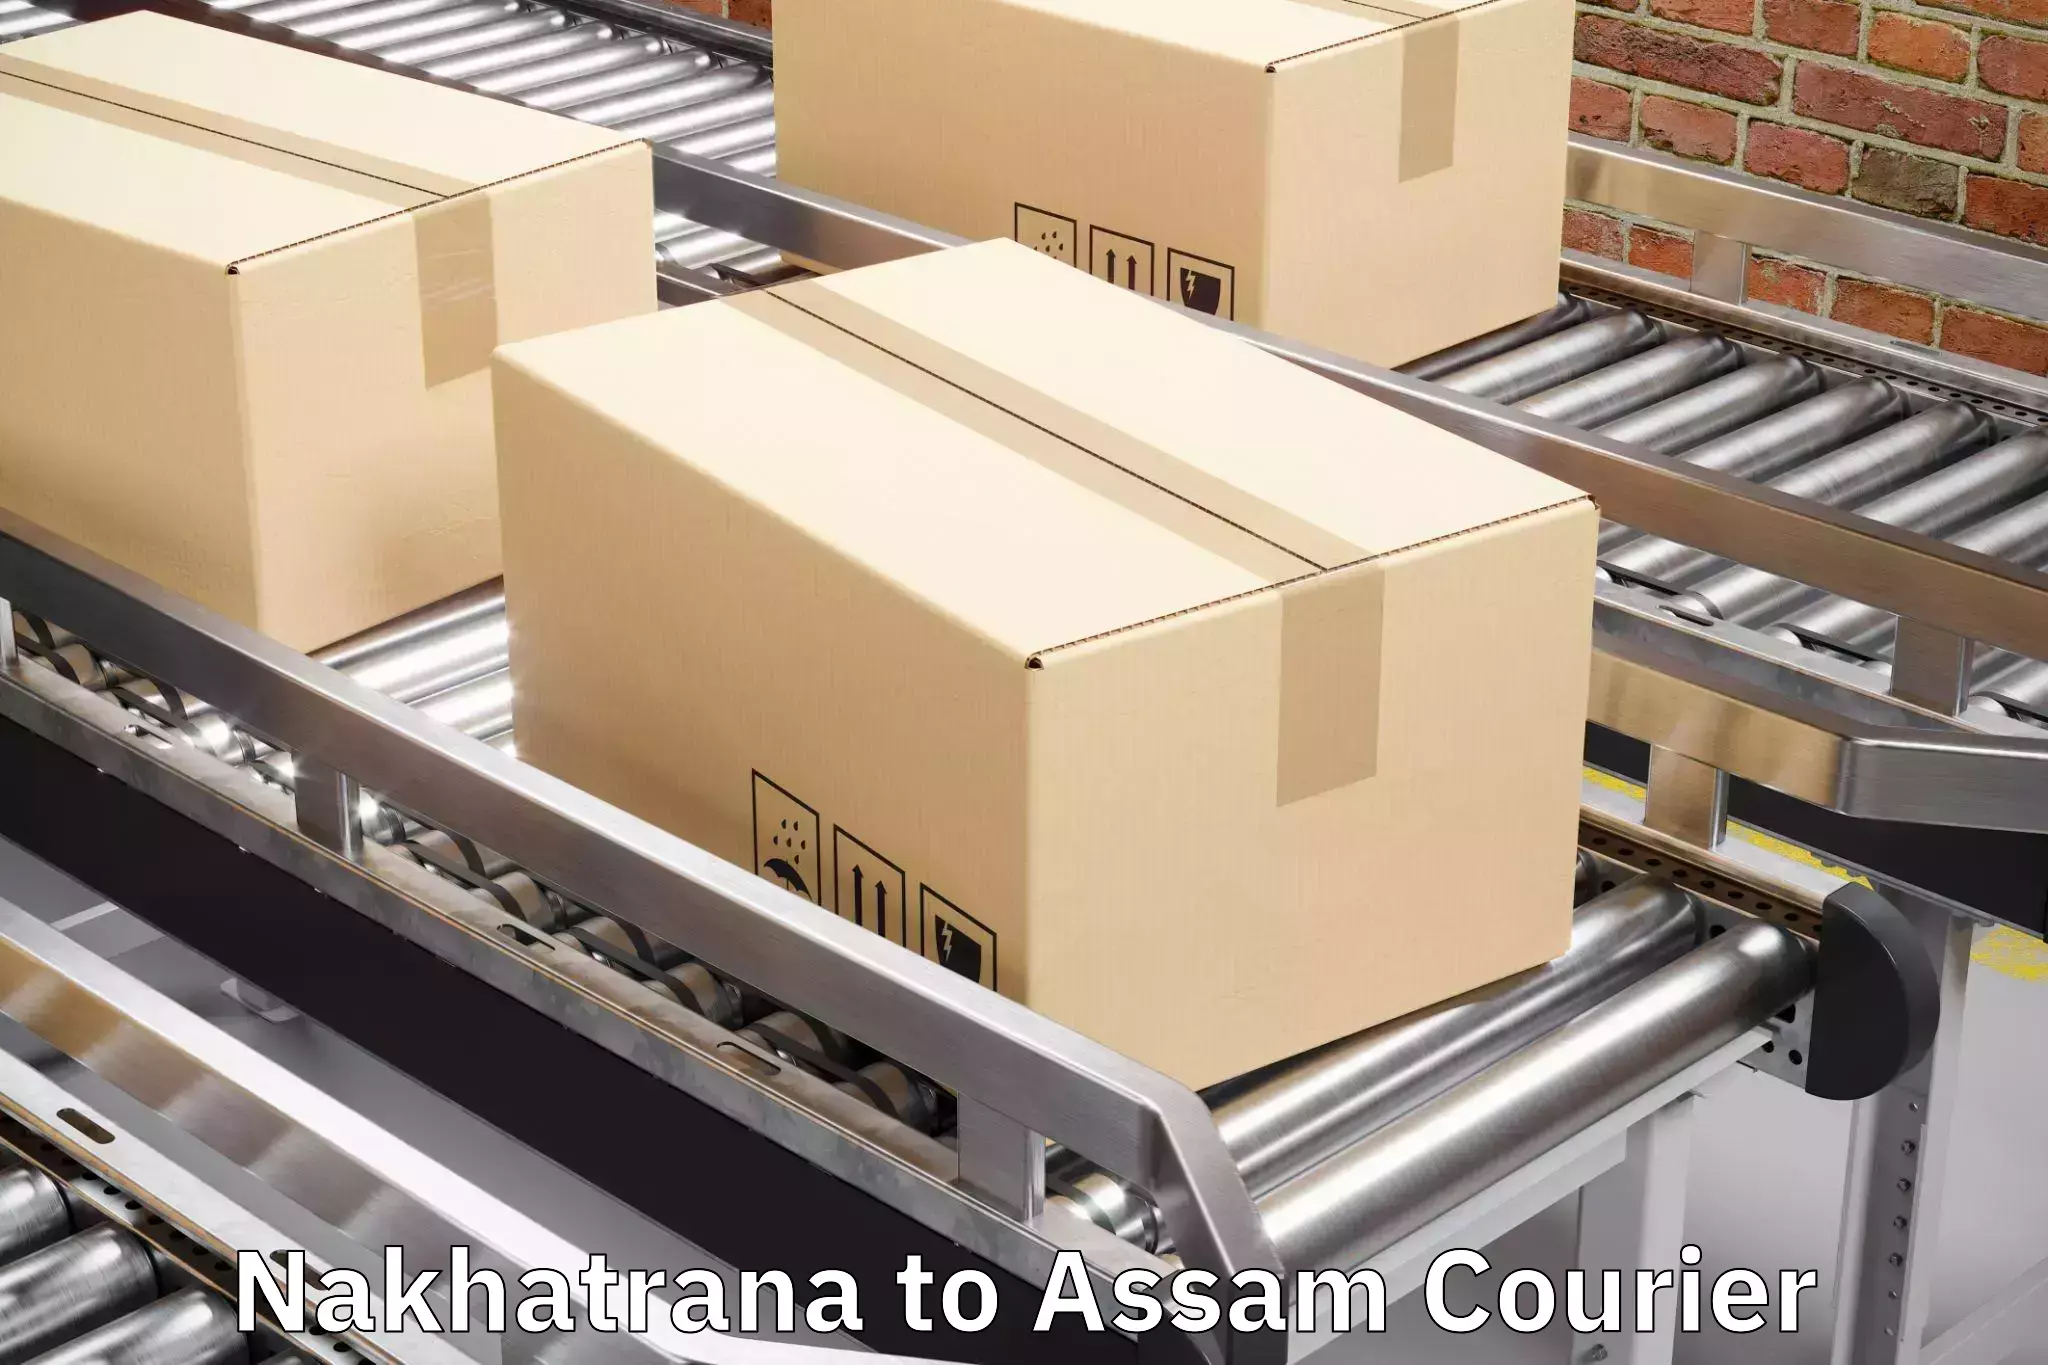 Urgent luggage shipment Nakhatrana to Hailakandi